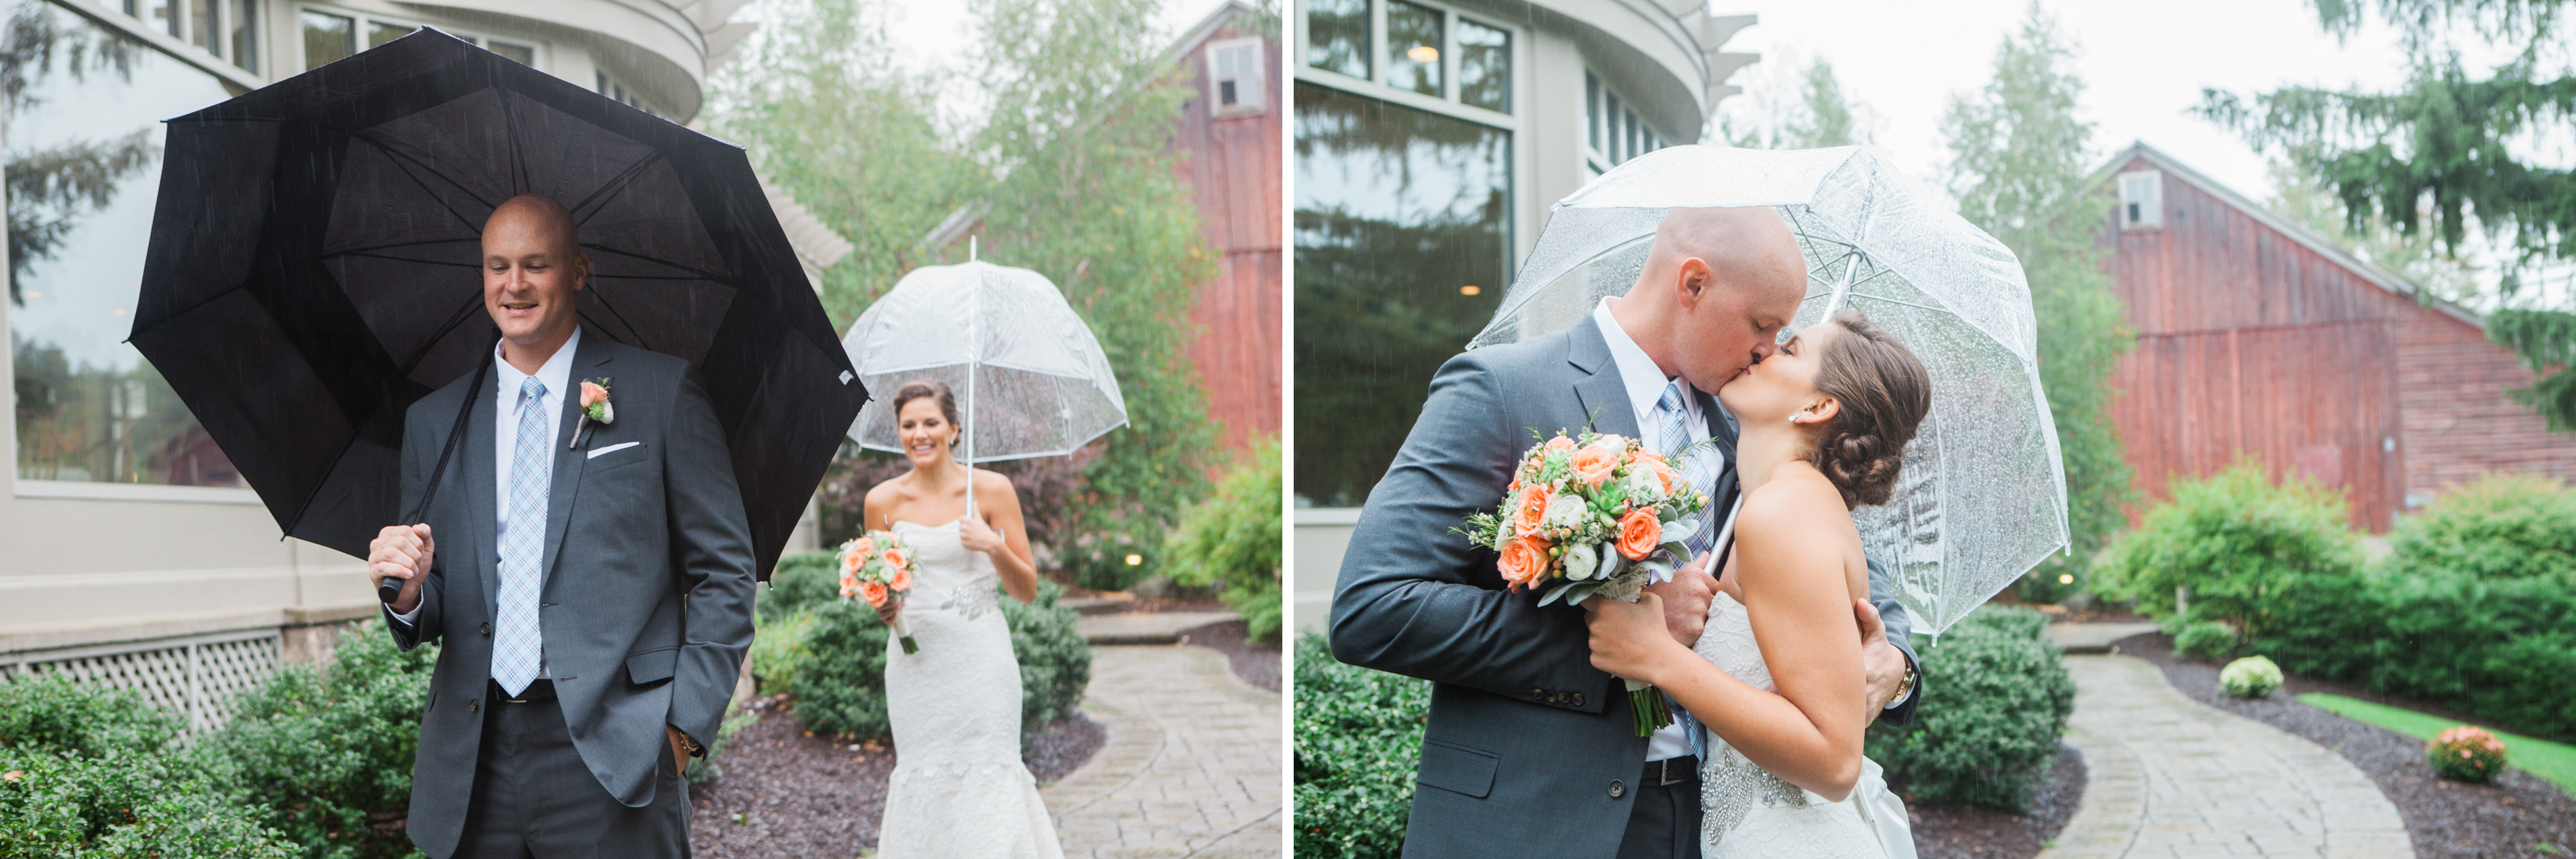 Matt & Cassie - Wedding Photography in the Poconos